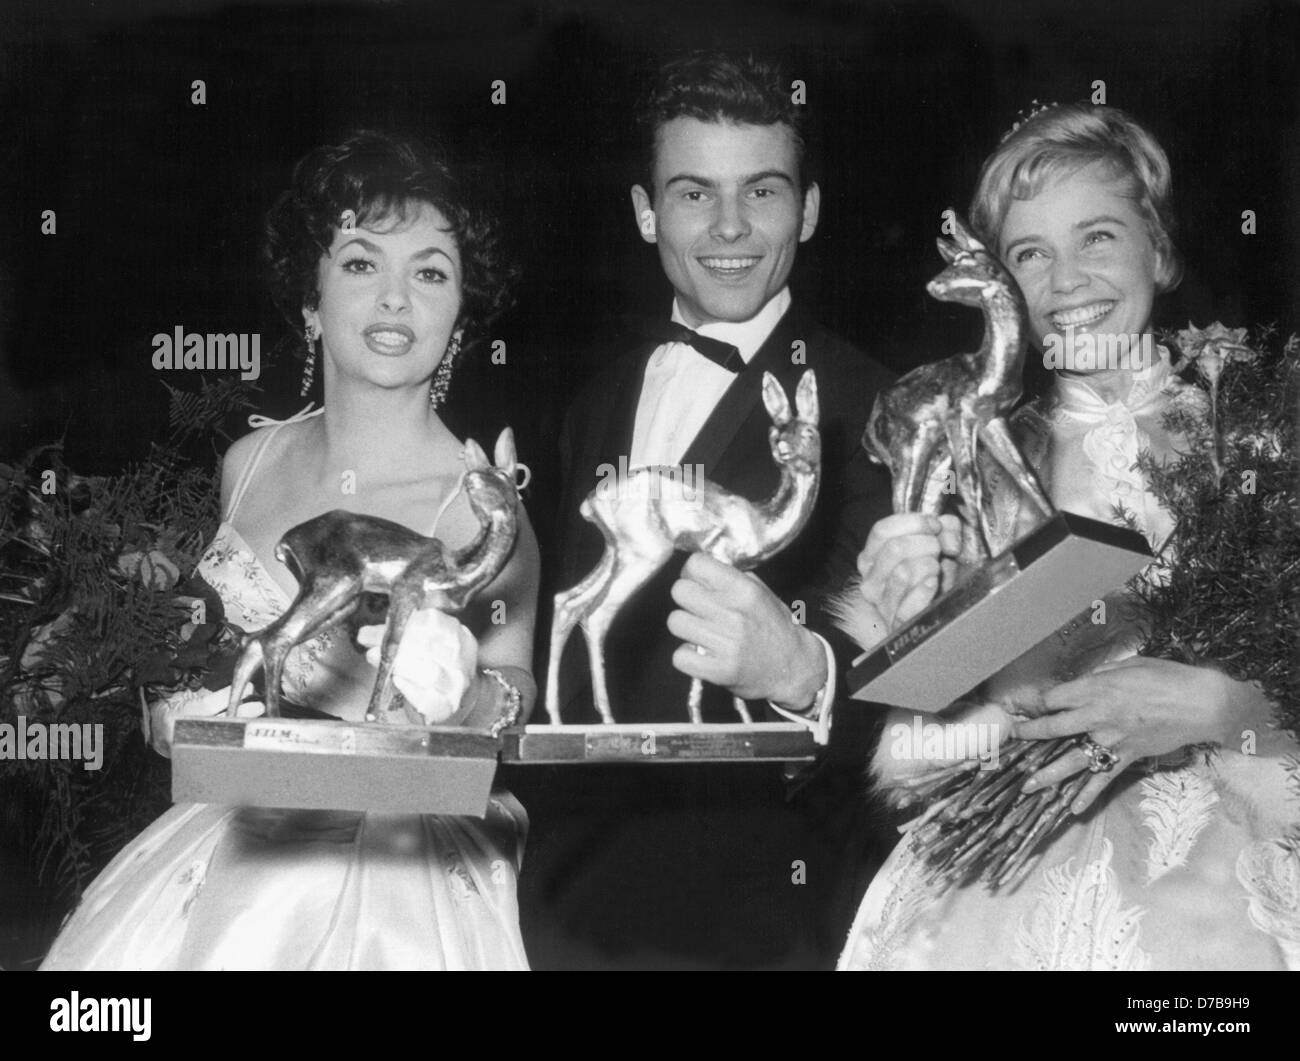 Bambi Awardees di 1958 (l-r) Gina Lollobrogida, Horst 'Hotte' Buchholz e Maria Schell. Buchholz è uno dei pochi attori tedeschi che hanno ricevuto riconoscimento internazionale. Foto Stock